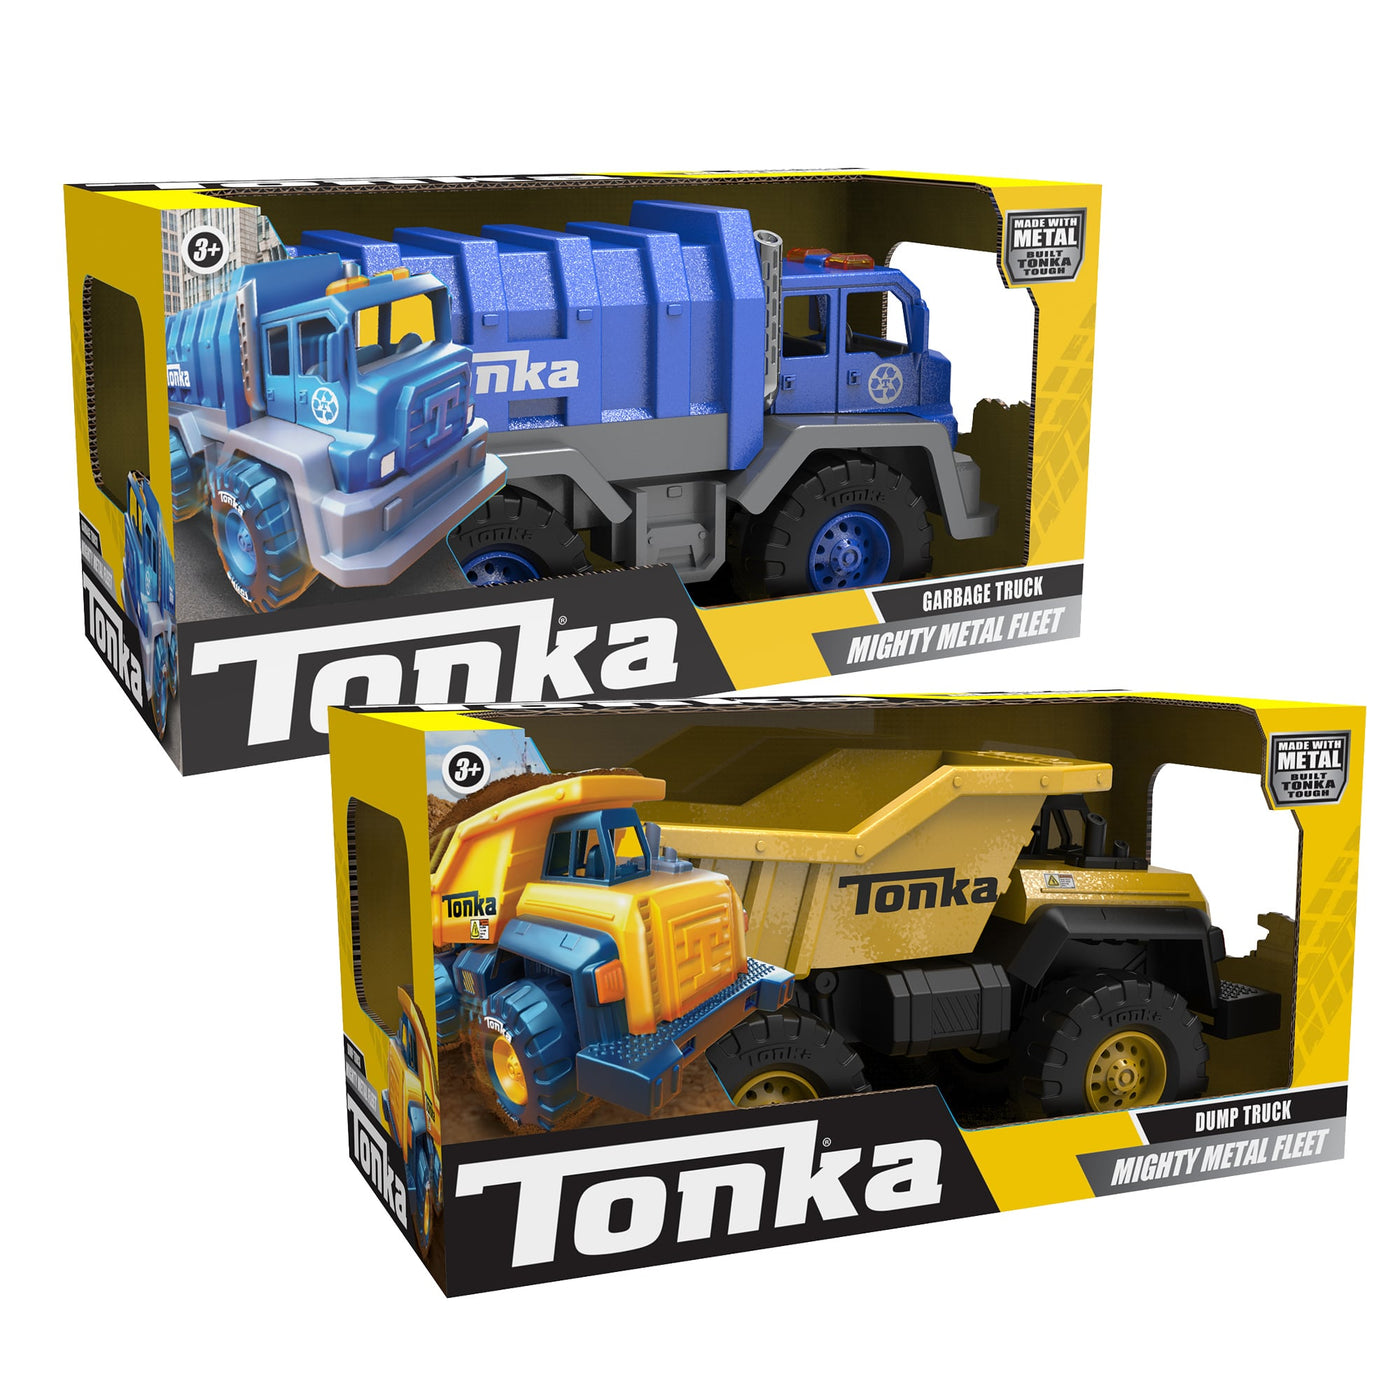 Mighty Metals Fleet Tonka Truck